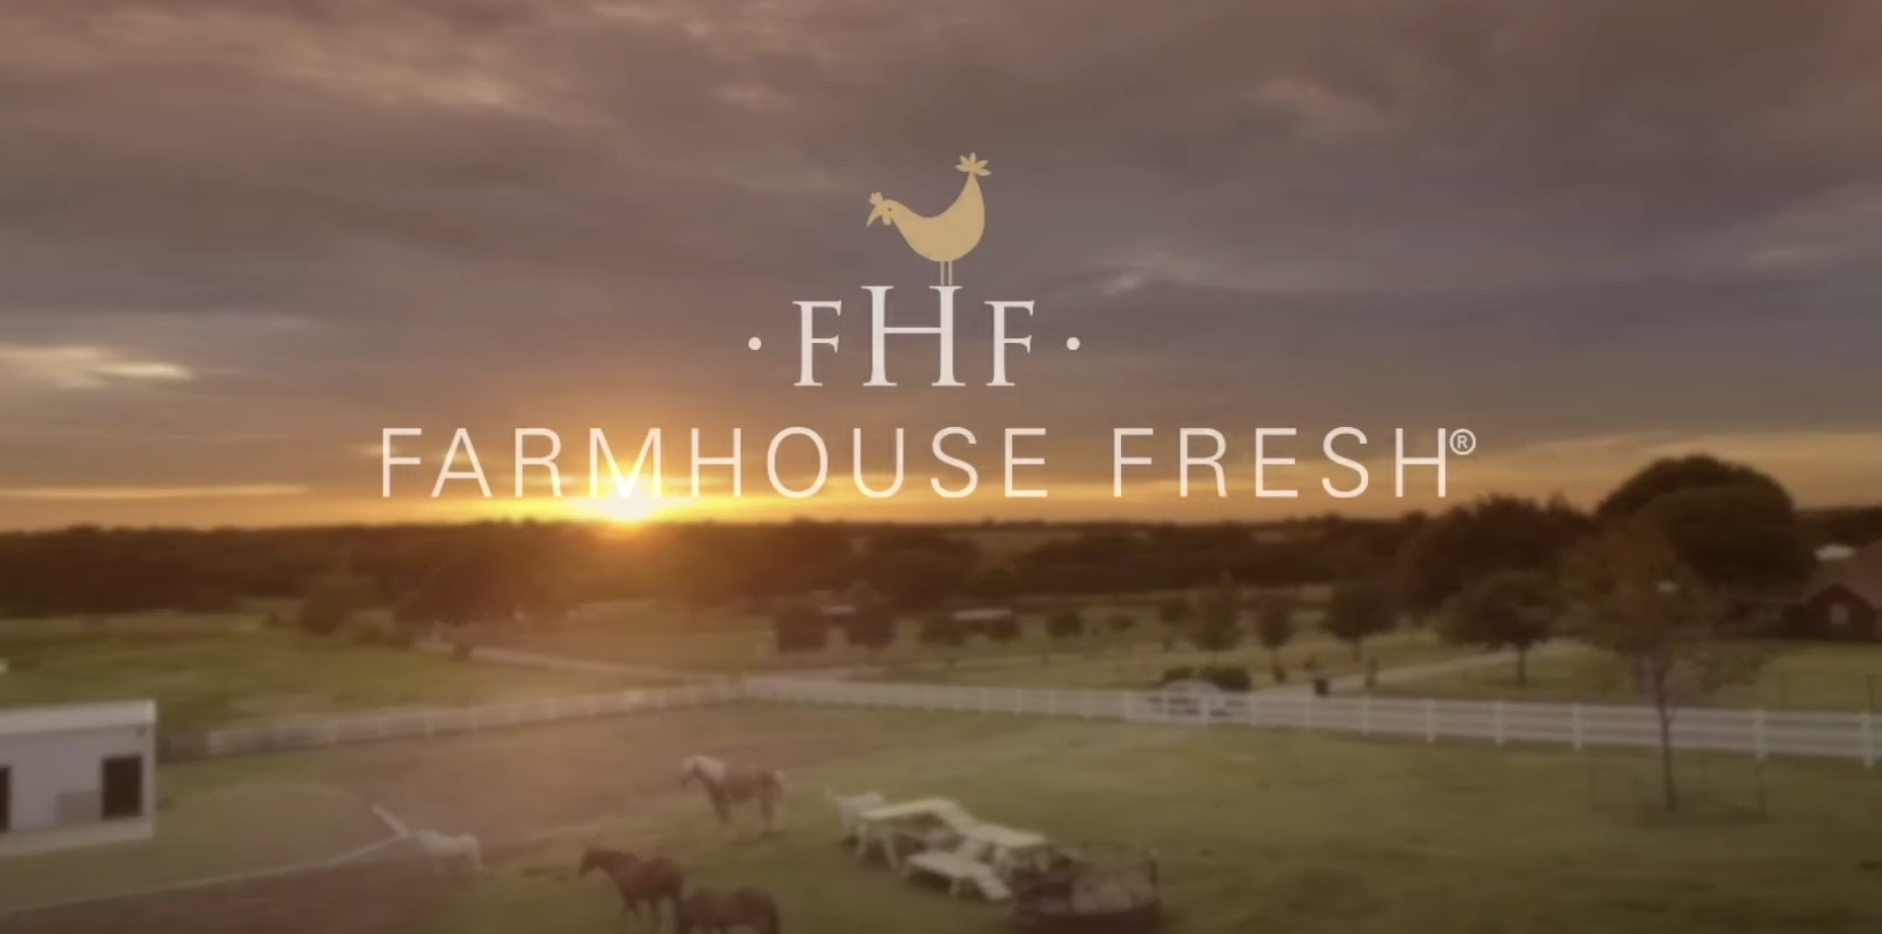 FarmHouse Fresh image-skincare